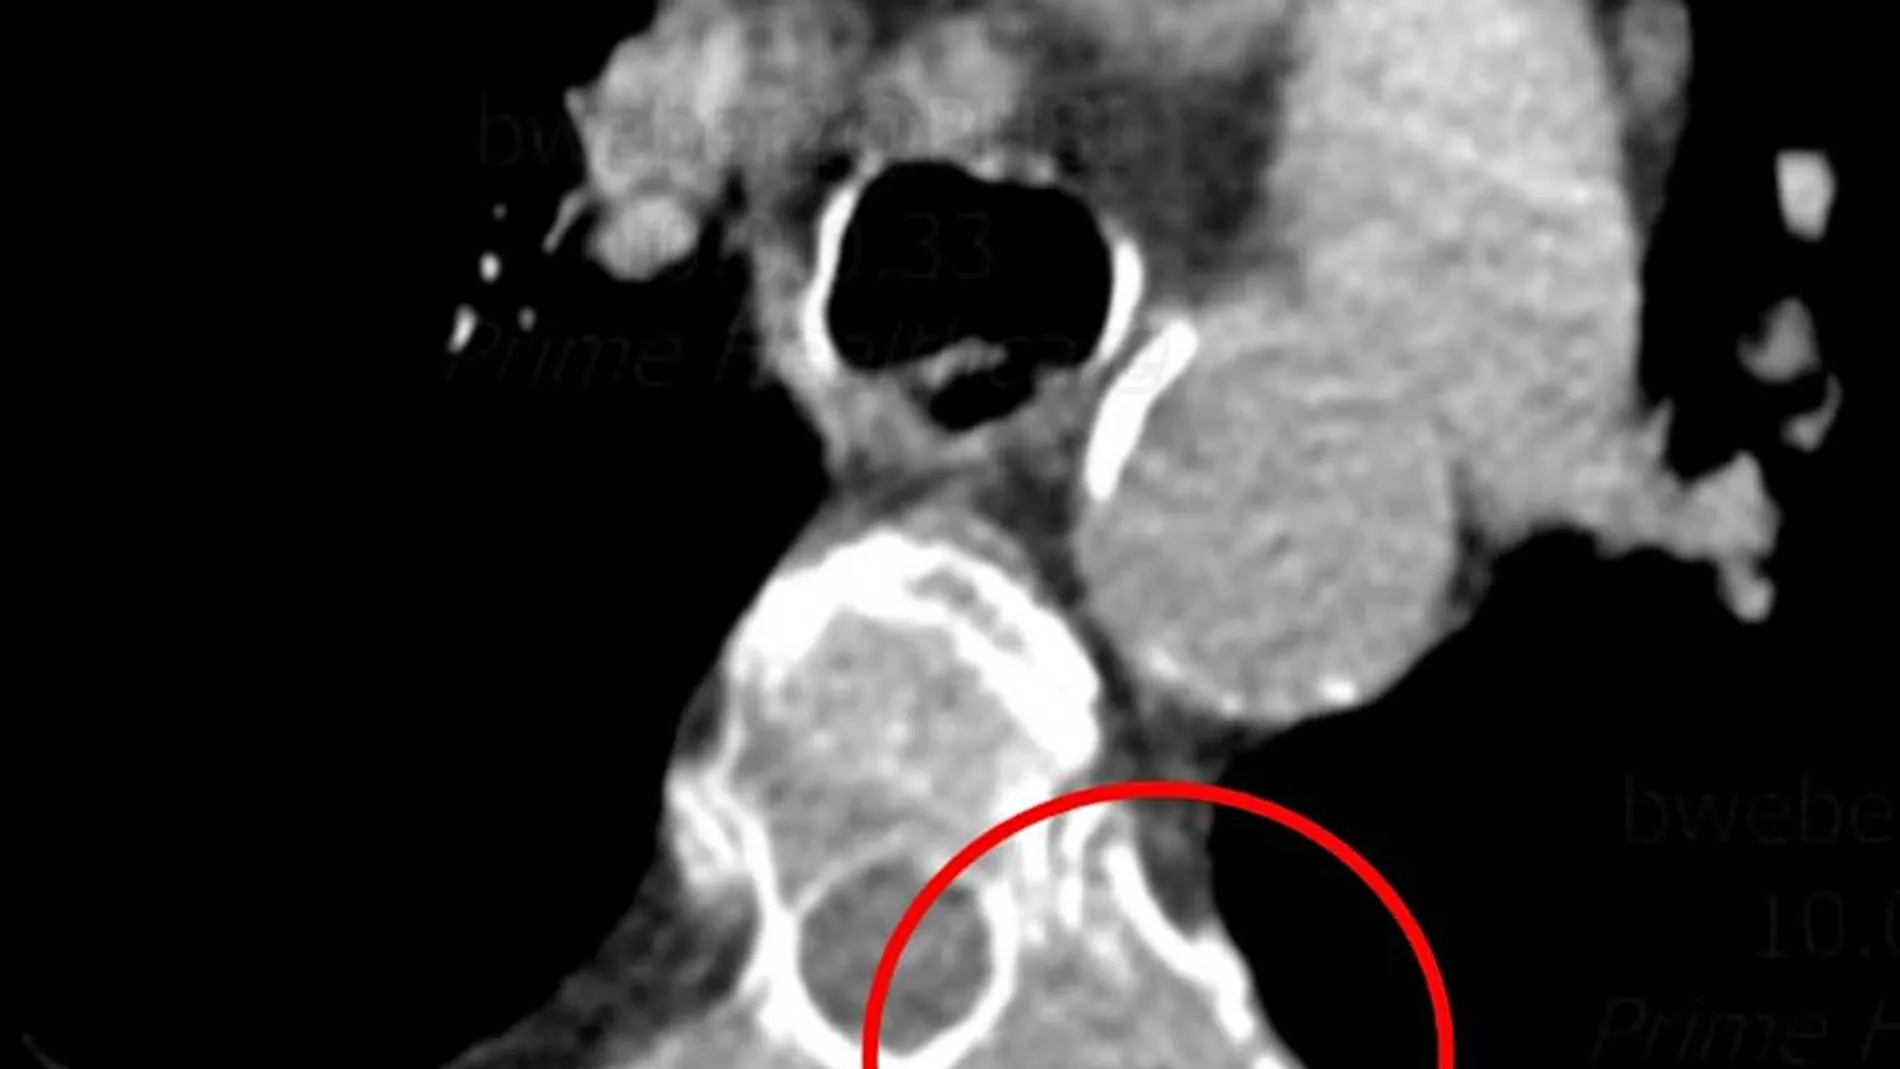 Tomografía computarizada de la columna torácica que muestra posibles metástasis óseas en las costillas (círculo rojo)